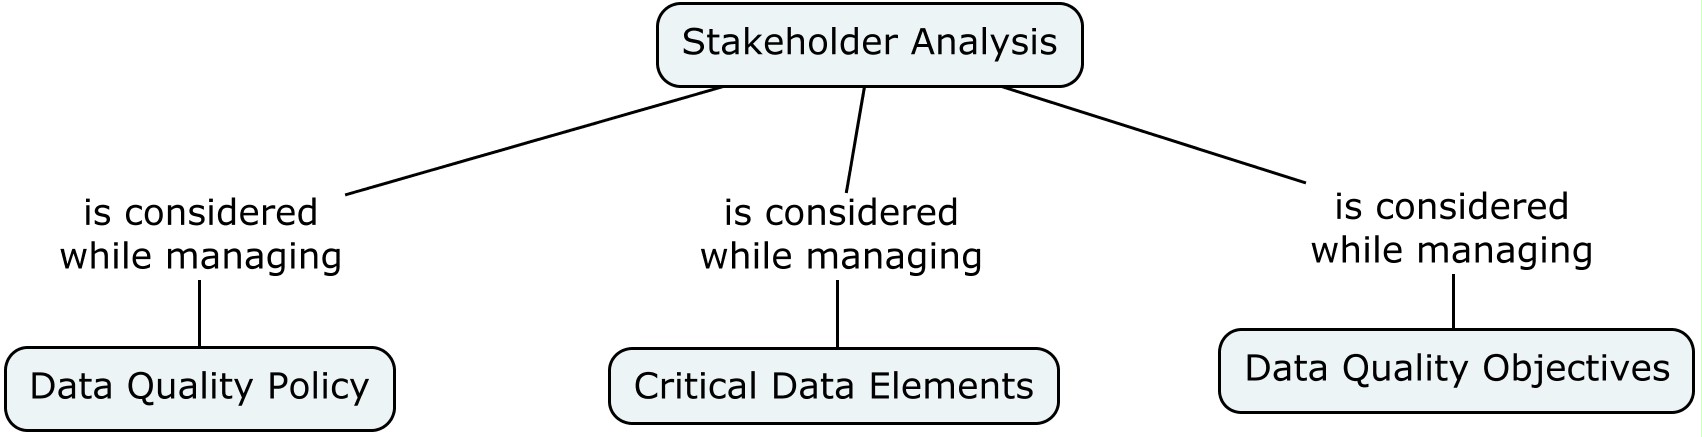 stakeholder_analysis.jpg